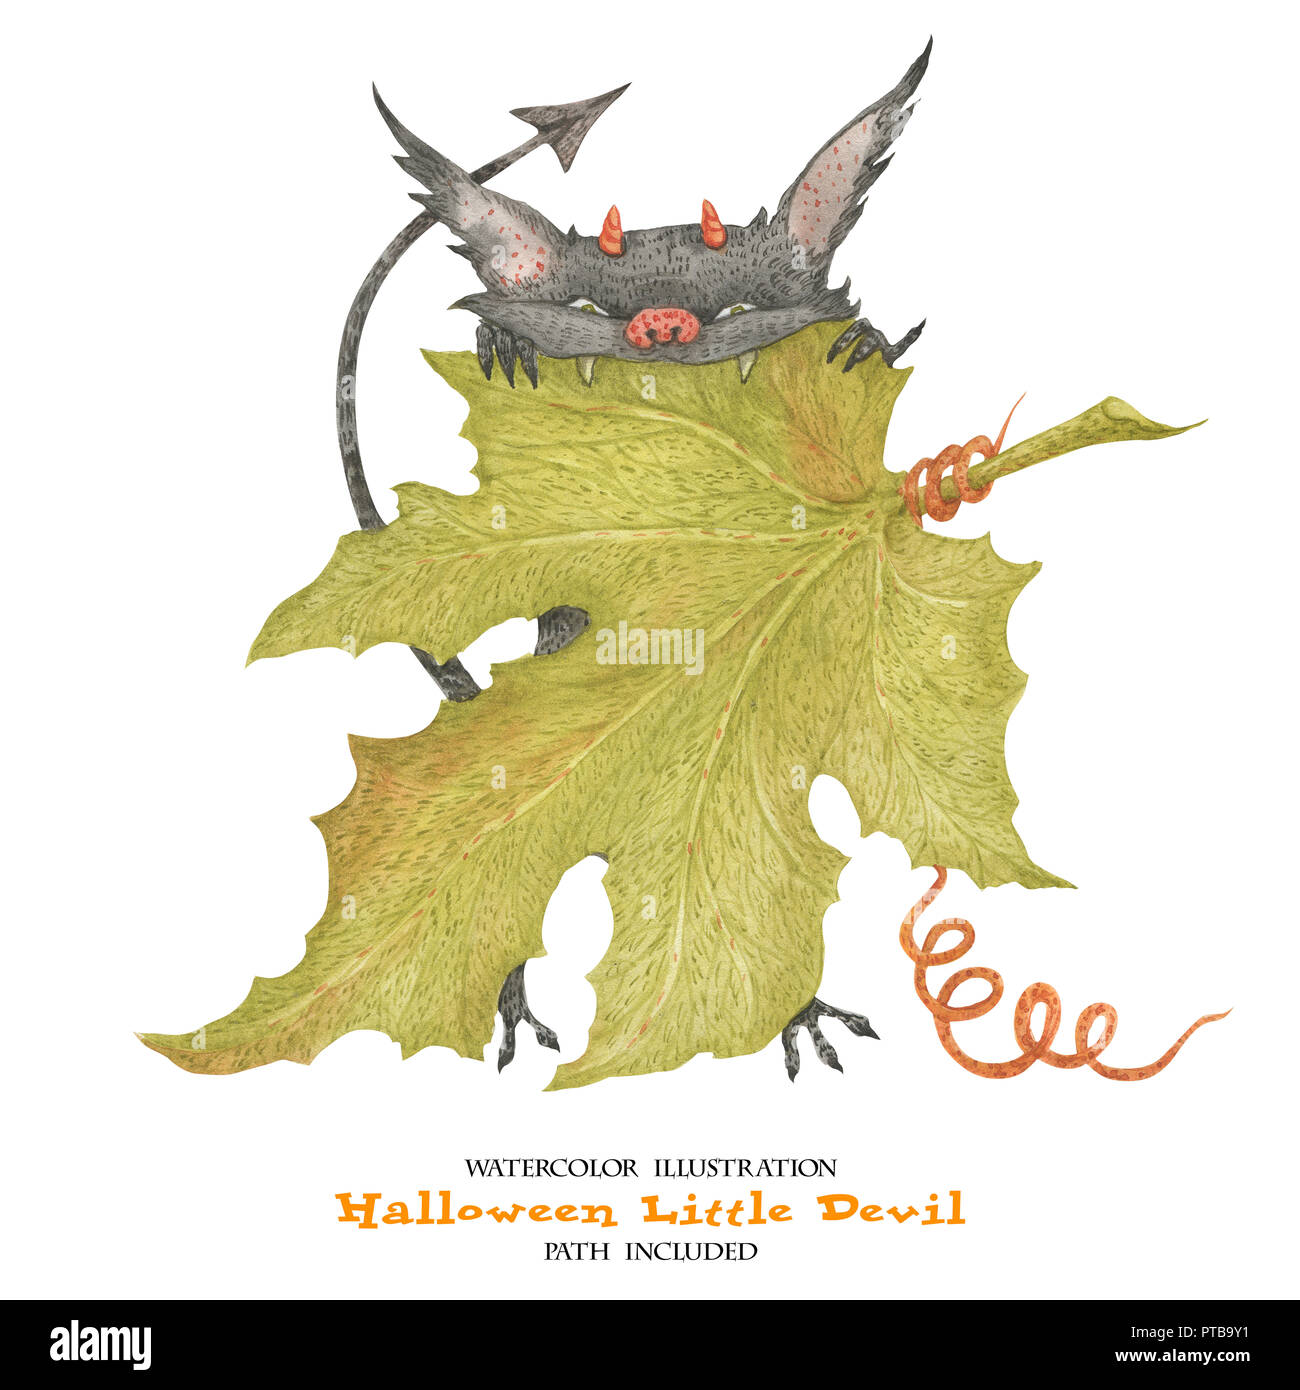 Illustration à l'aquarelle pour l'Halloween. Le petit diable ronge une feuille de citrouille. Isoalted, chemin inclus Banque D'Images